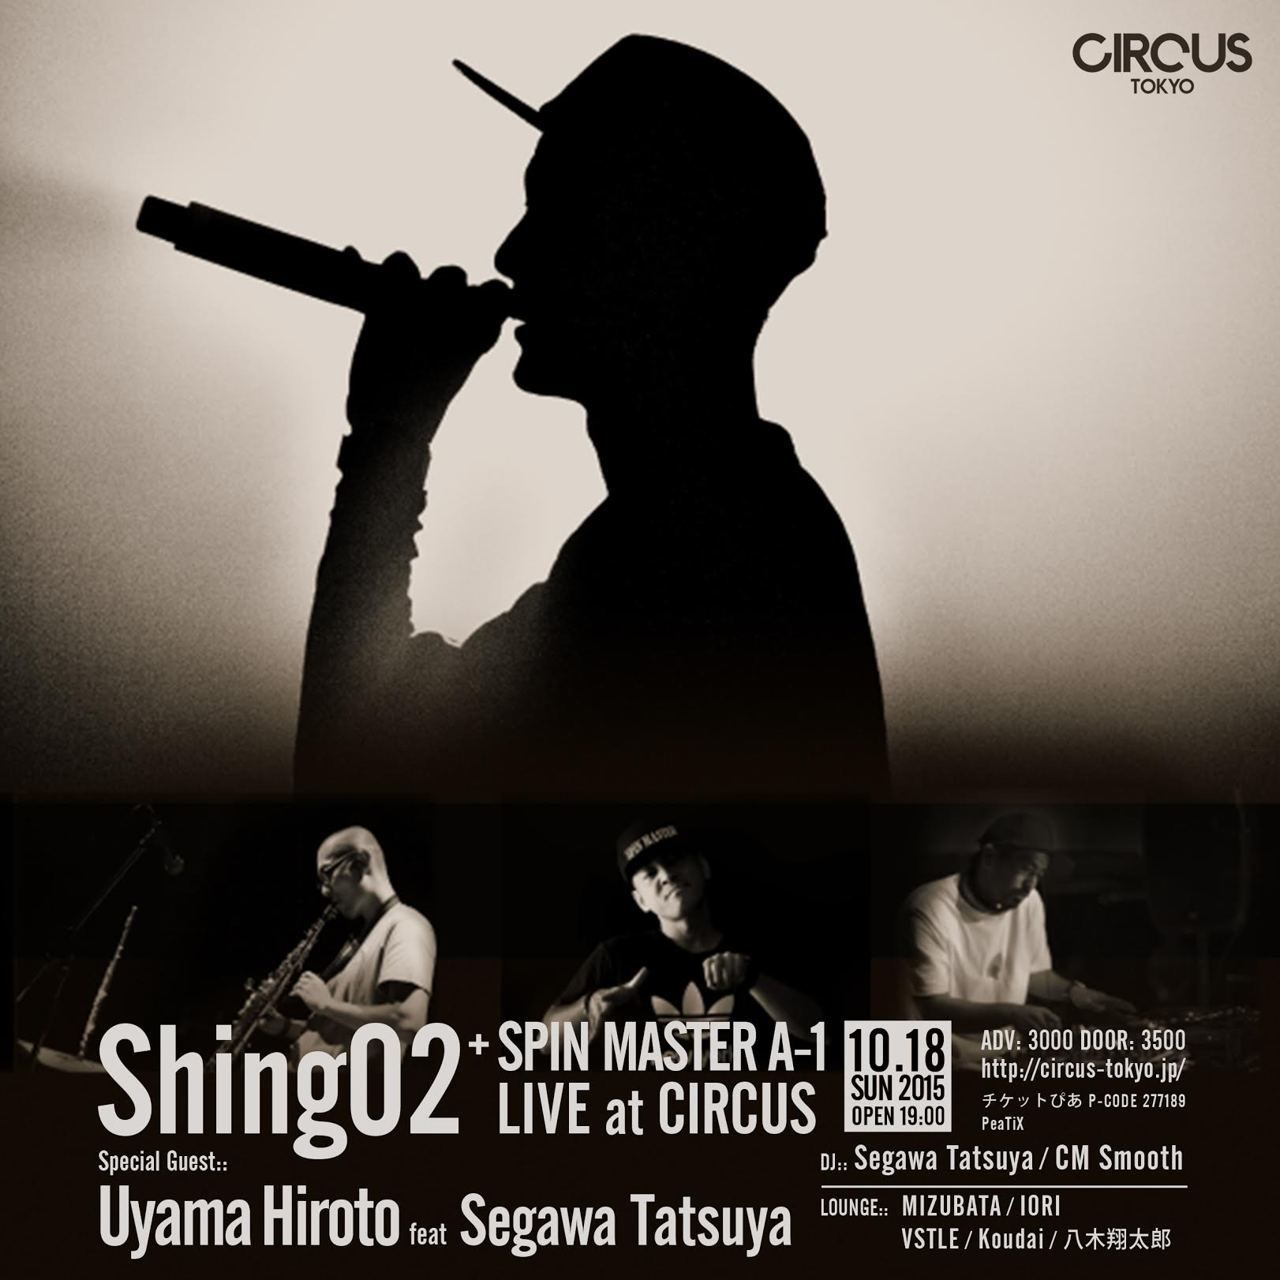 Shing02+SPIN MASTER A-1 LIVE at CIRCUS